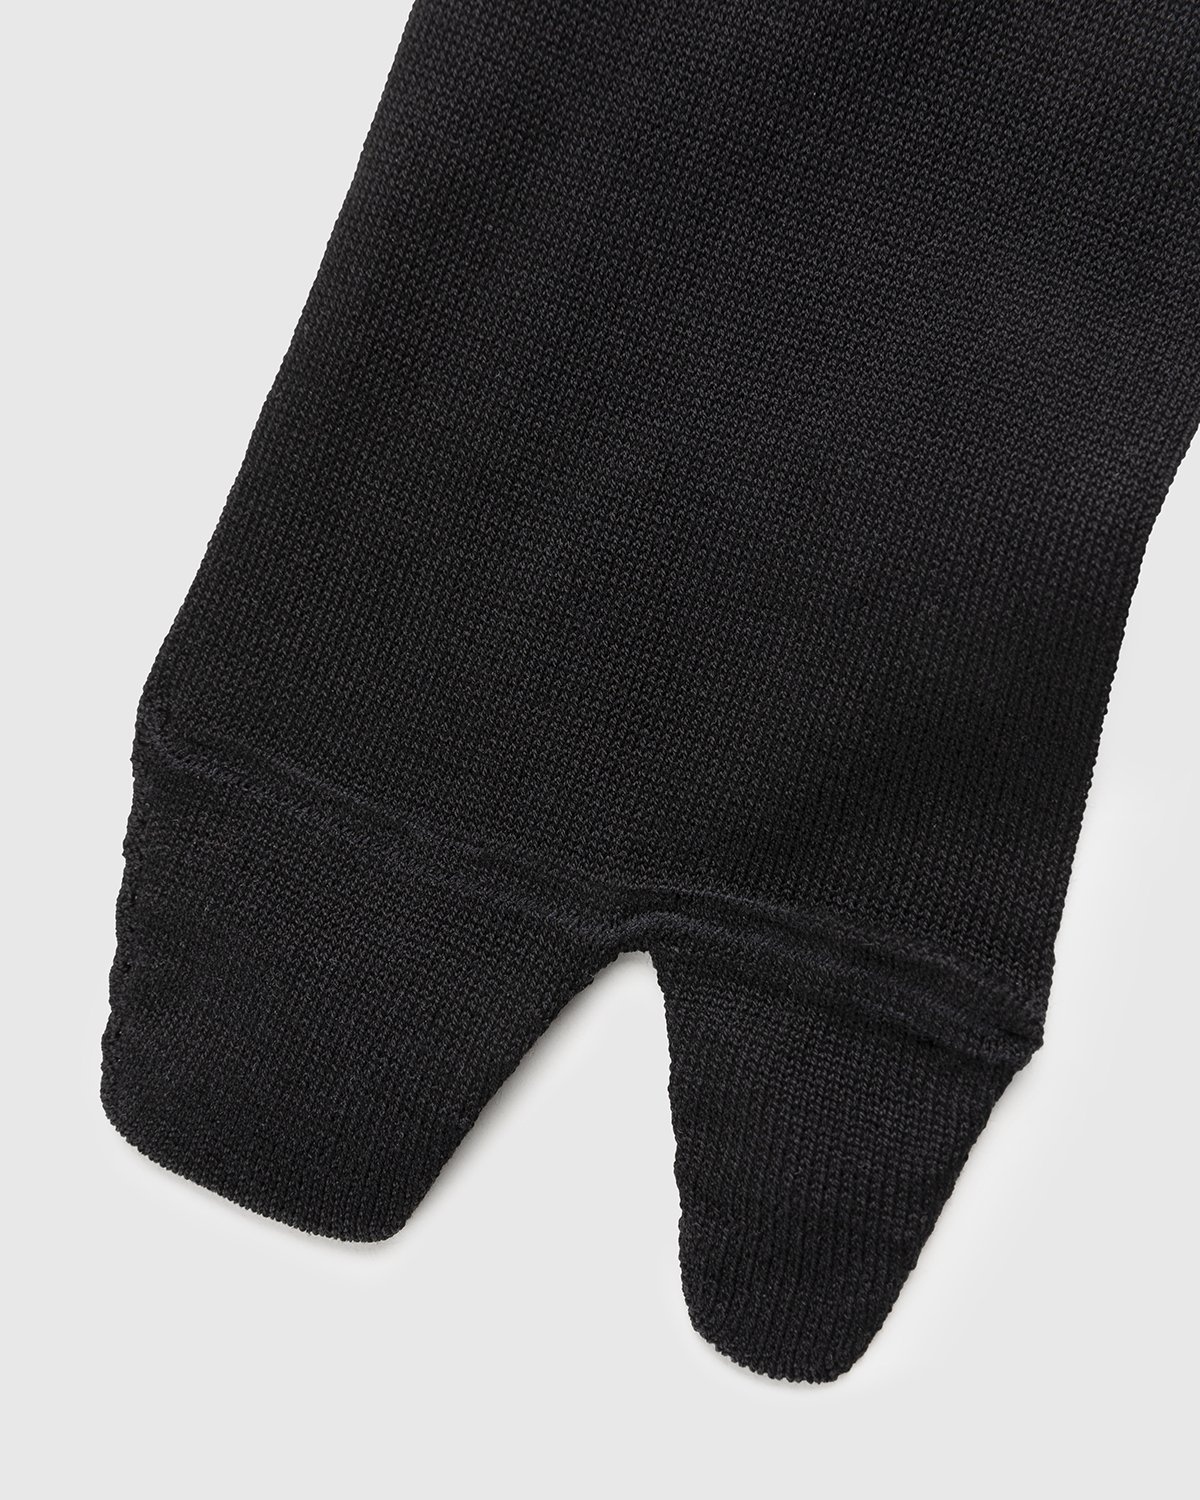 Maison Margiela – Tabi Socks Black - Socks - Black - Image 3